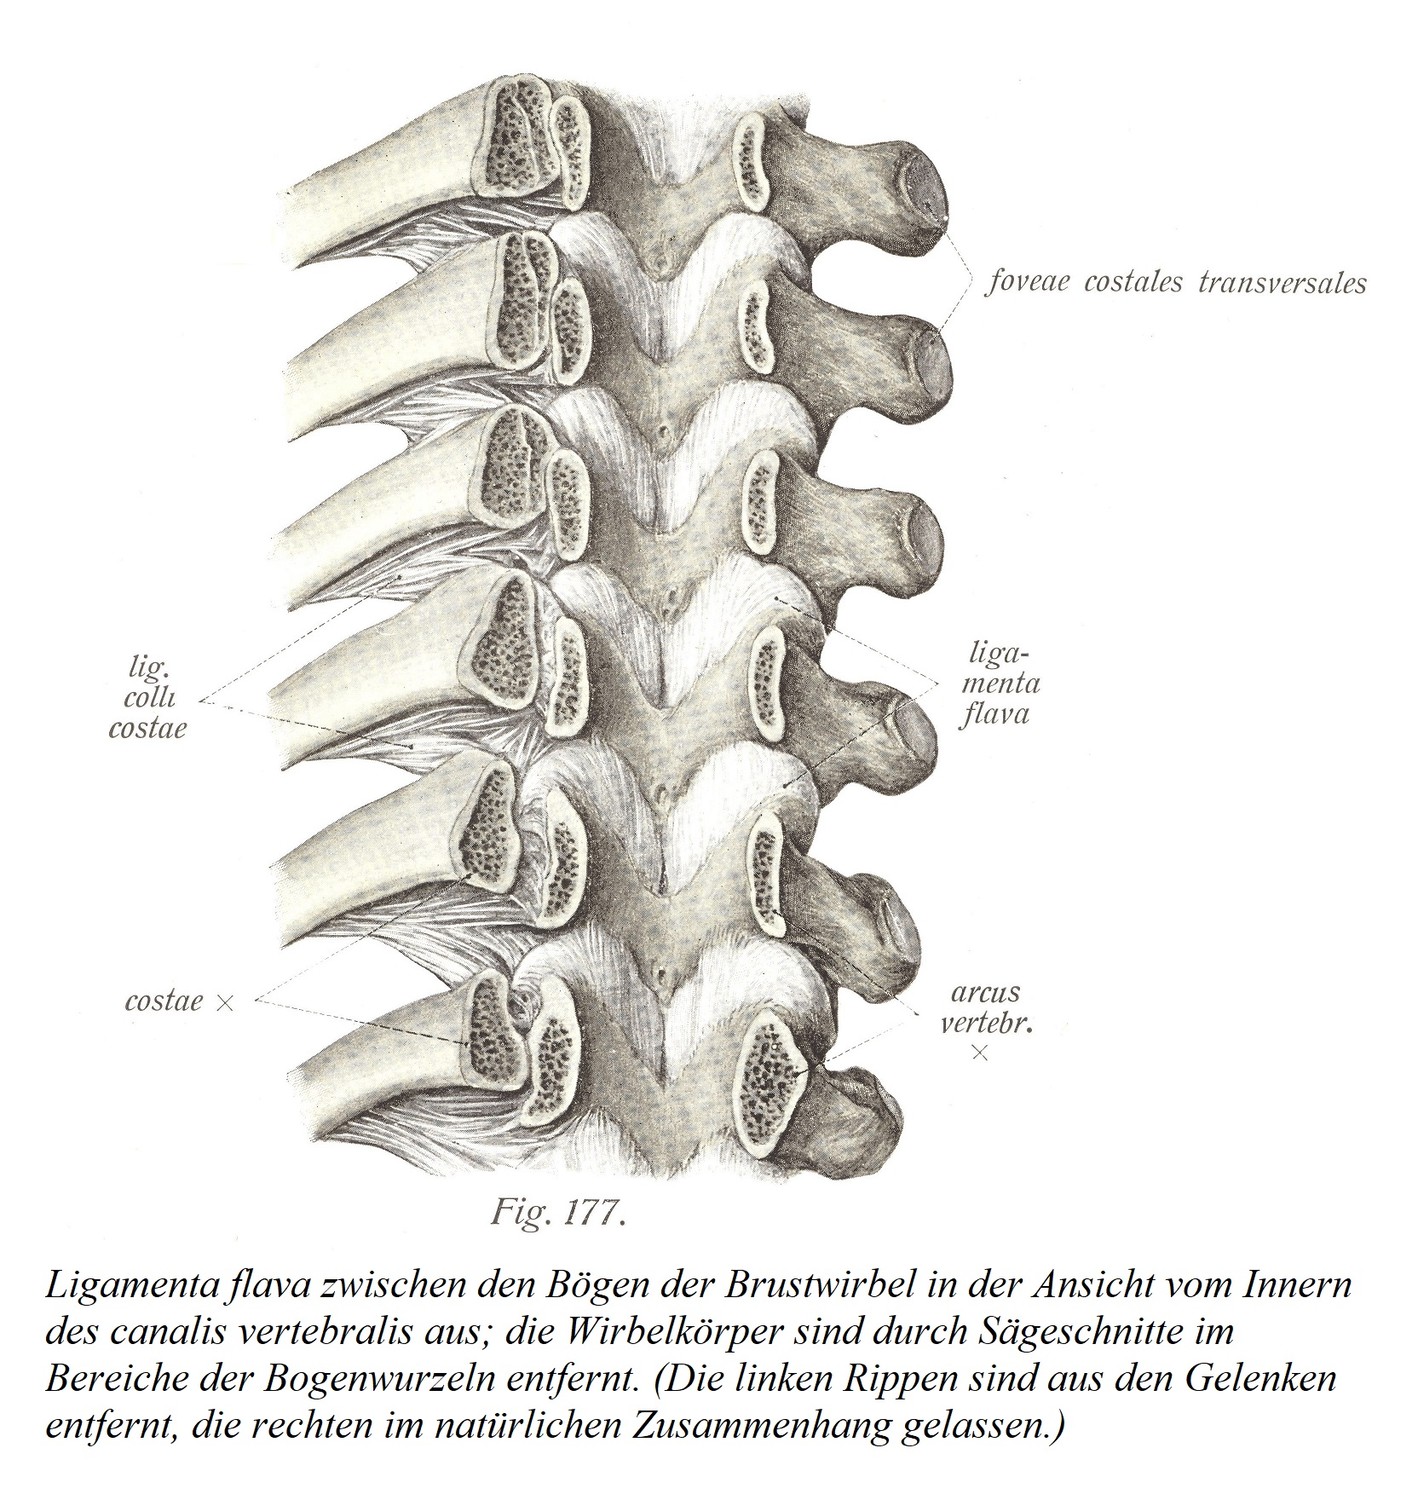 Ligamenta flava между дугами грудных позвонков, если смотреть изнутри позвоночного канала; тела позвонков удалены распилами в области корней дуг. (Левые ребра удалены из суставов, правые ребра оставлены в естественном контексте.) 